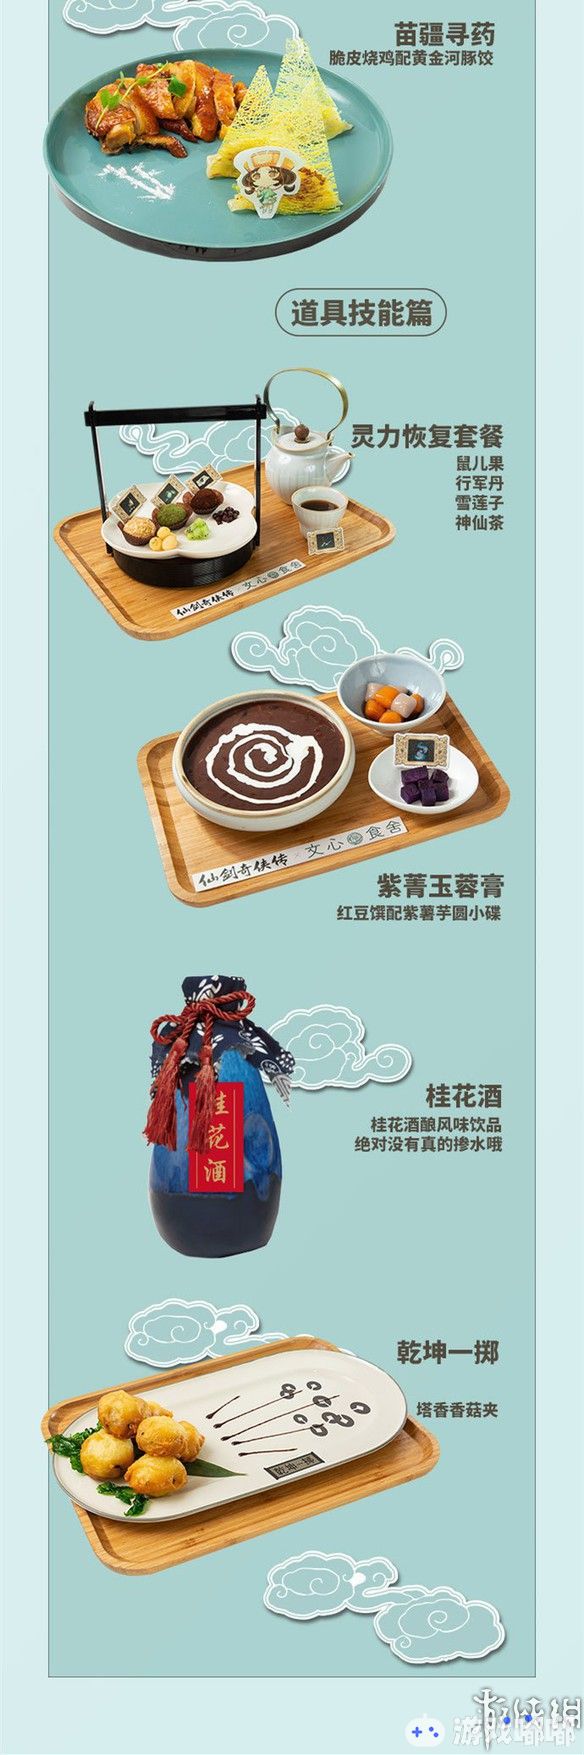 《仙剑奇侠传》主题餐厅将于1月1日在上海开启，不仅有《仙剑》主题餐点，还有各种特典周边。一起来了解下！